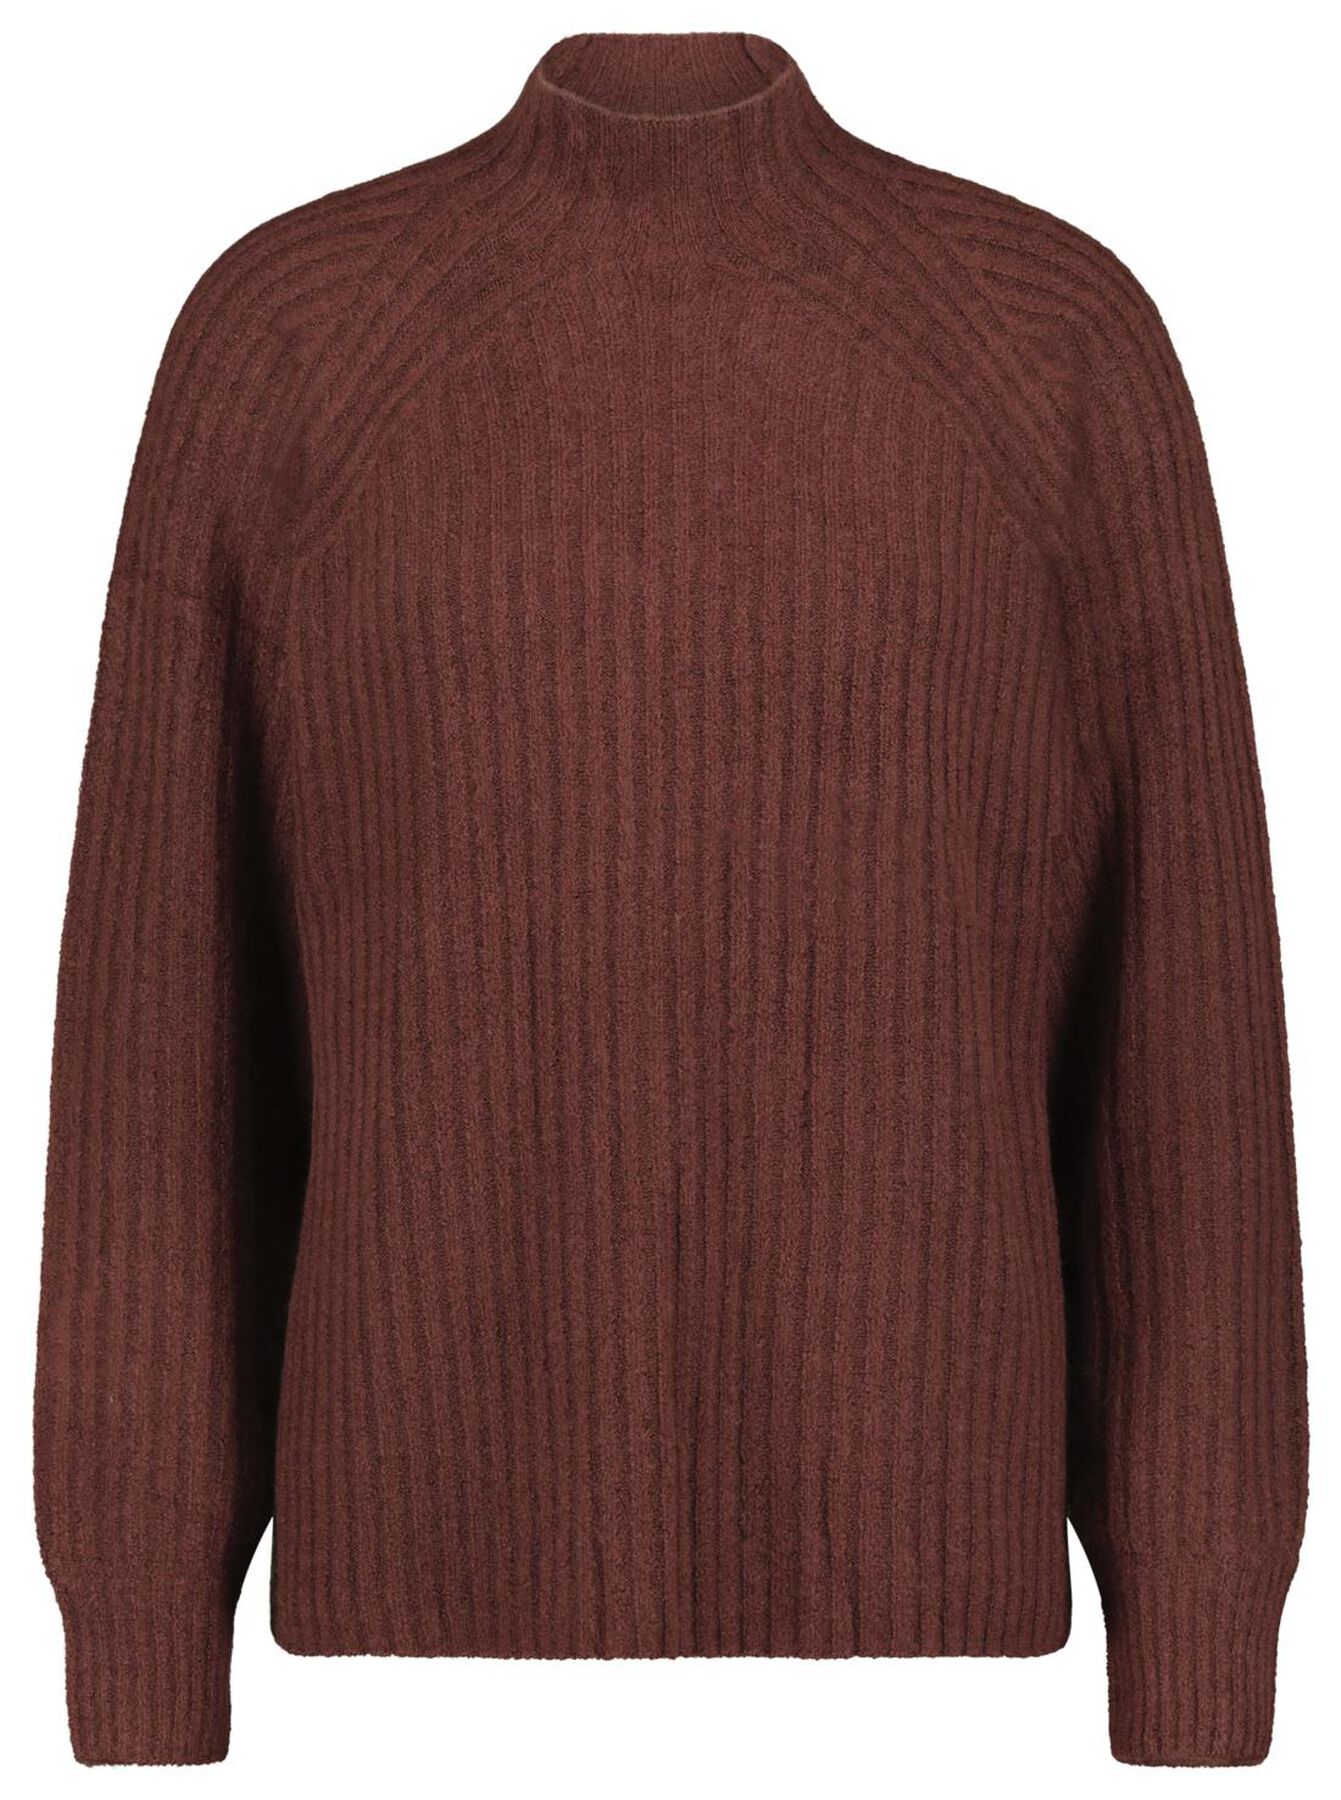 women's sweater rib-knitted brown - HEMA